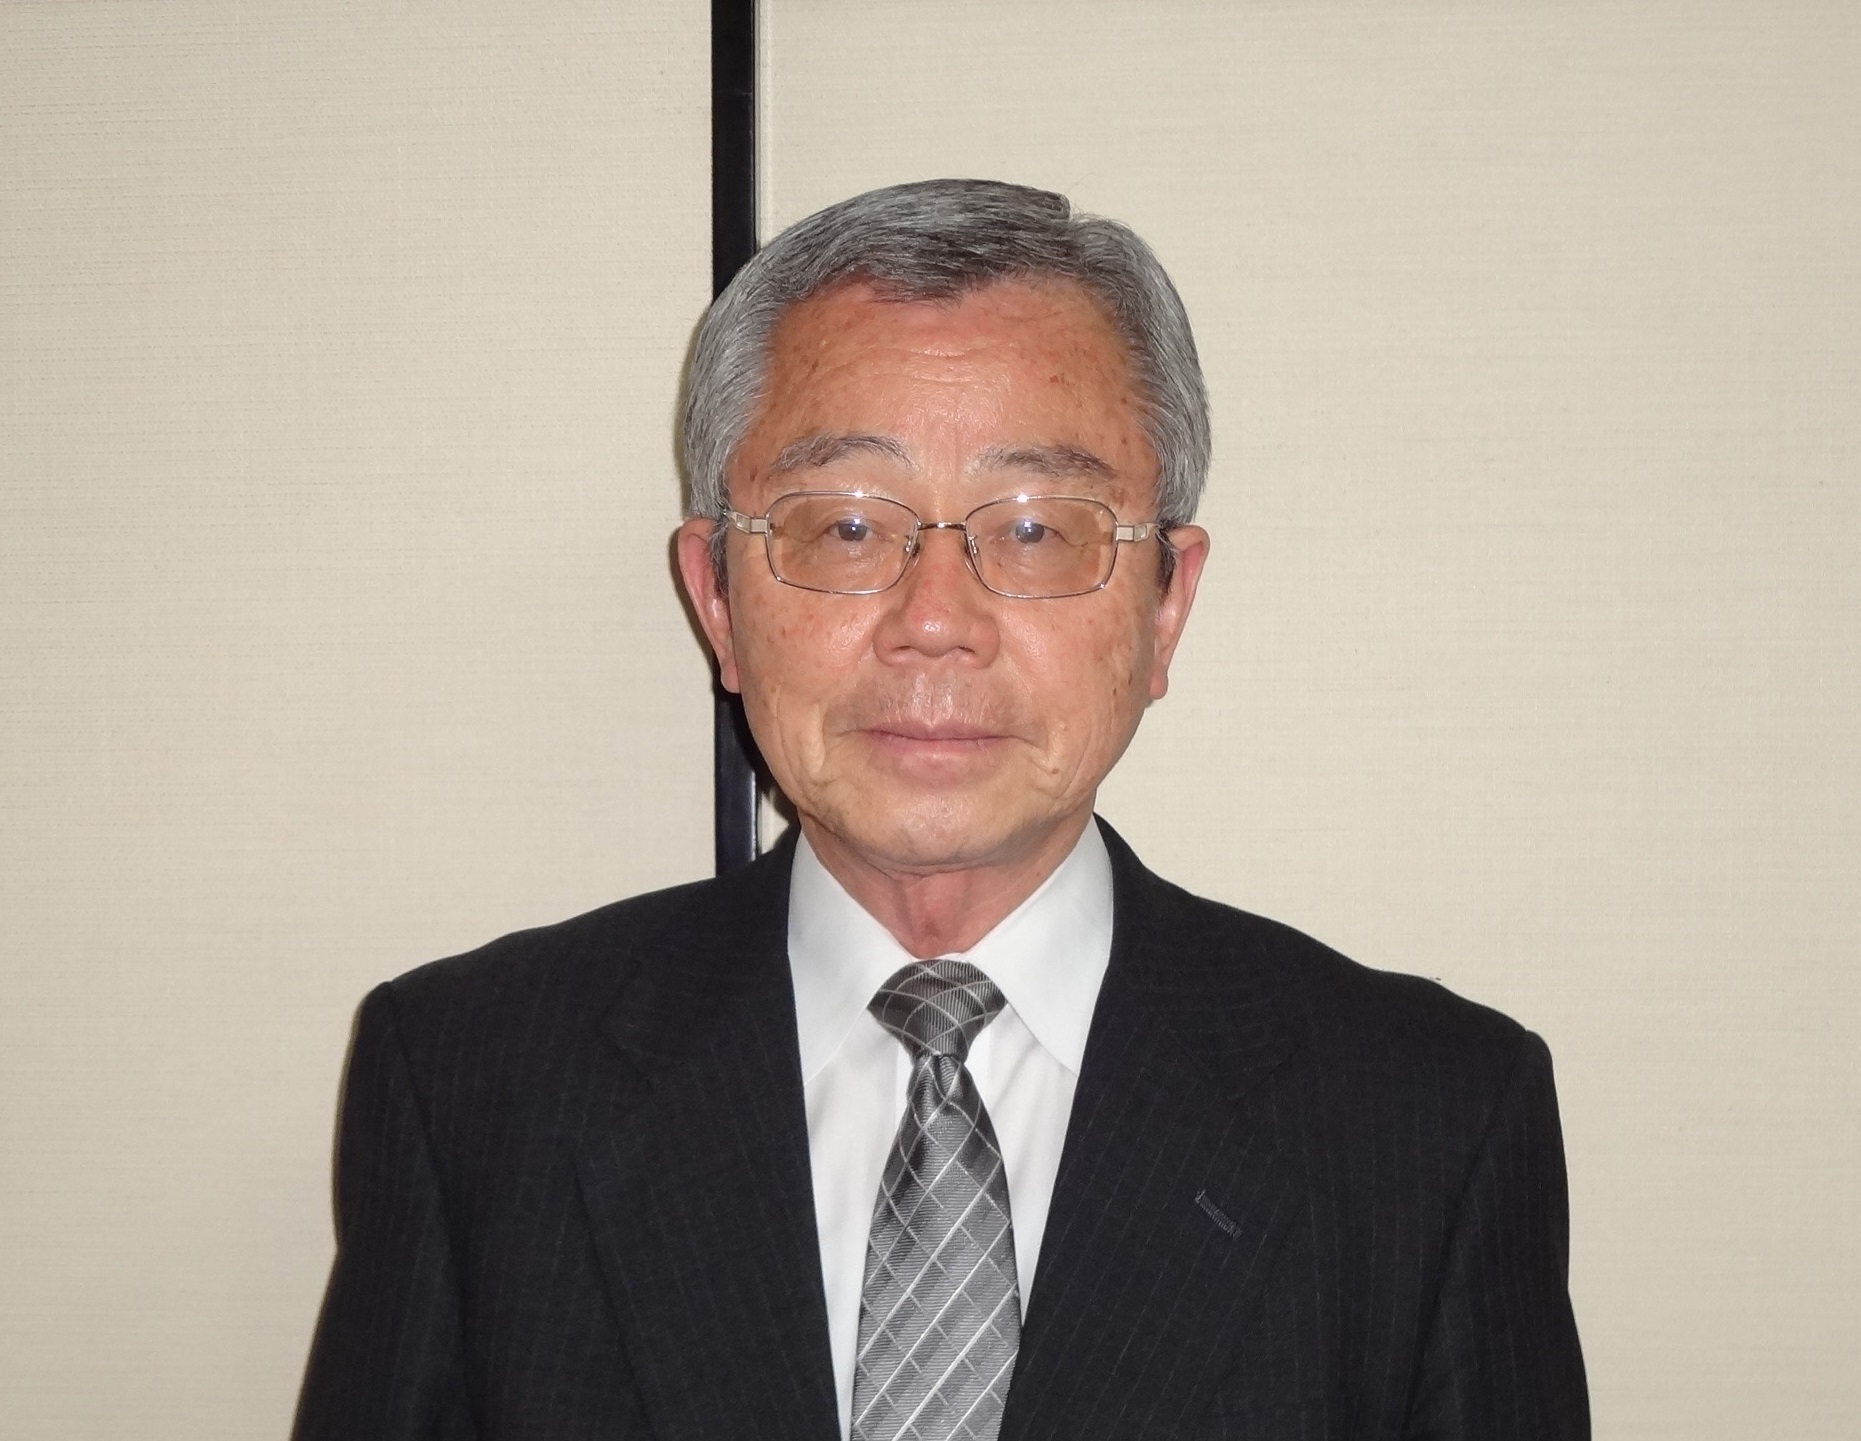 東電社 「堅実経営で顧客満足度向上」 斎藤義隆代表取締役社長